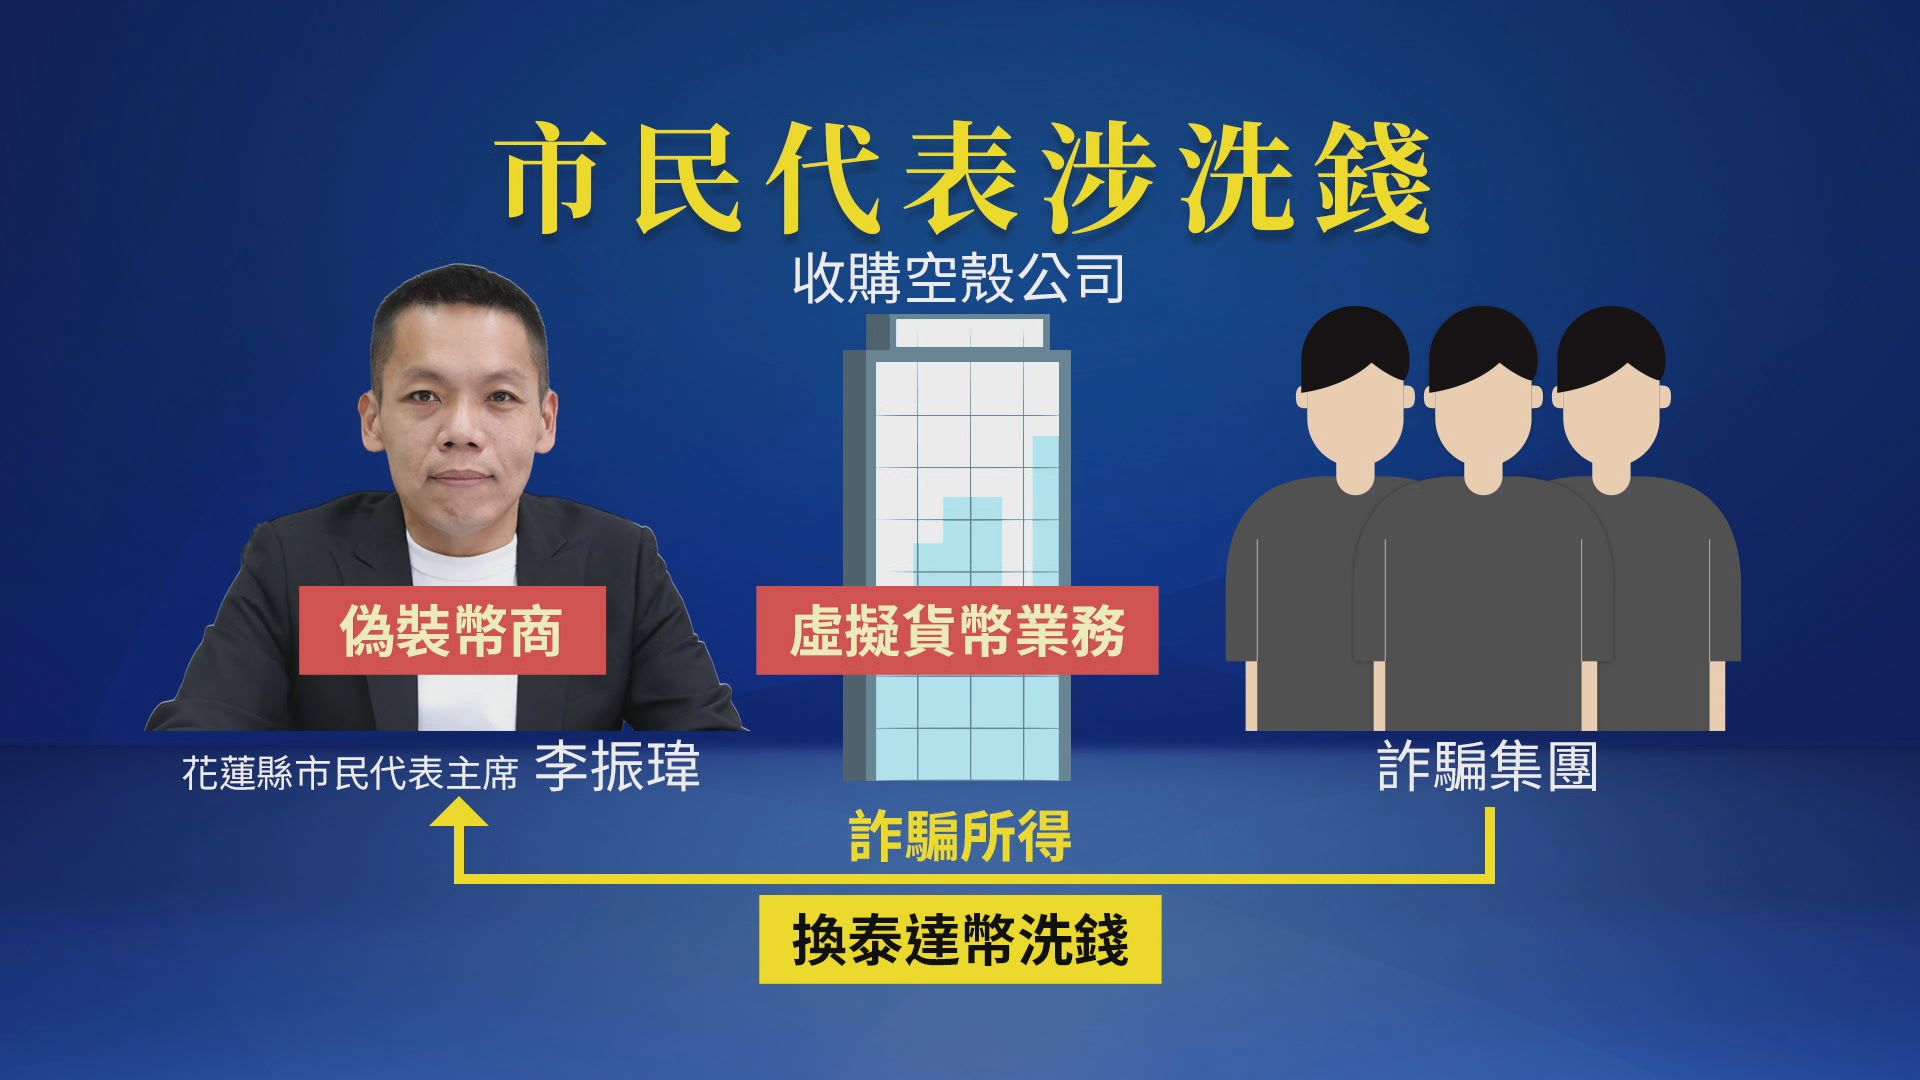 花蓮市民代表李振瑋涉假幣商、真協助製造金流斷點遭逮。